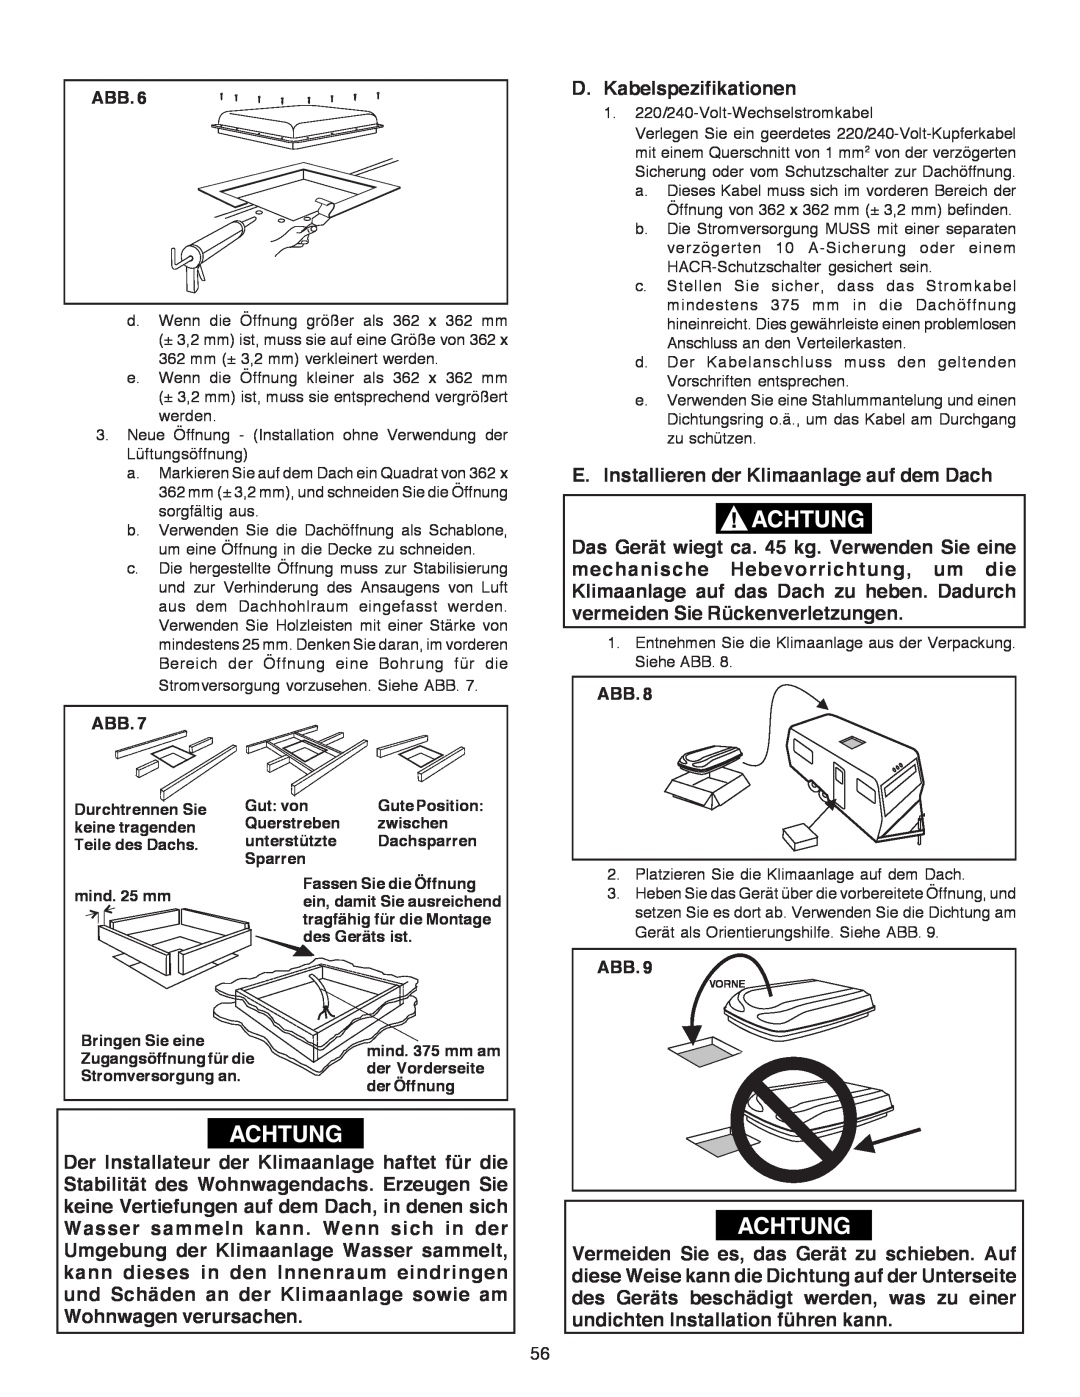 Dometic B3200 manual D.Kabelspezifikationen, E.Installieren der Klimaanlage auf dem Dach 